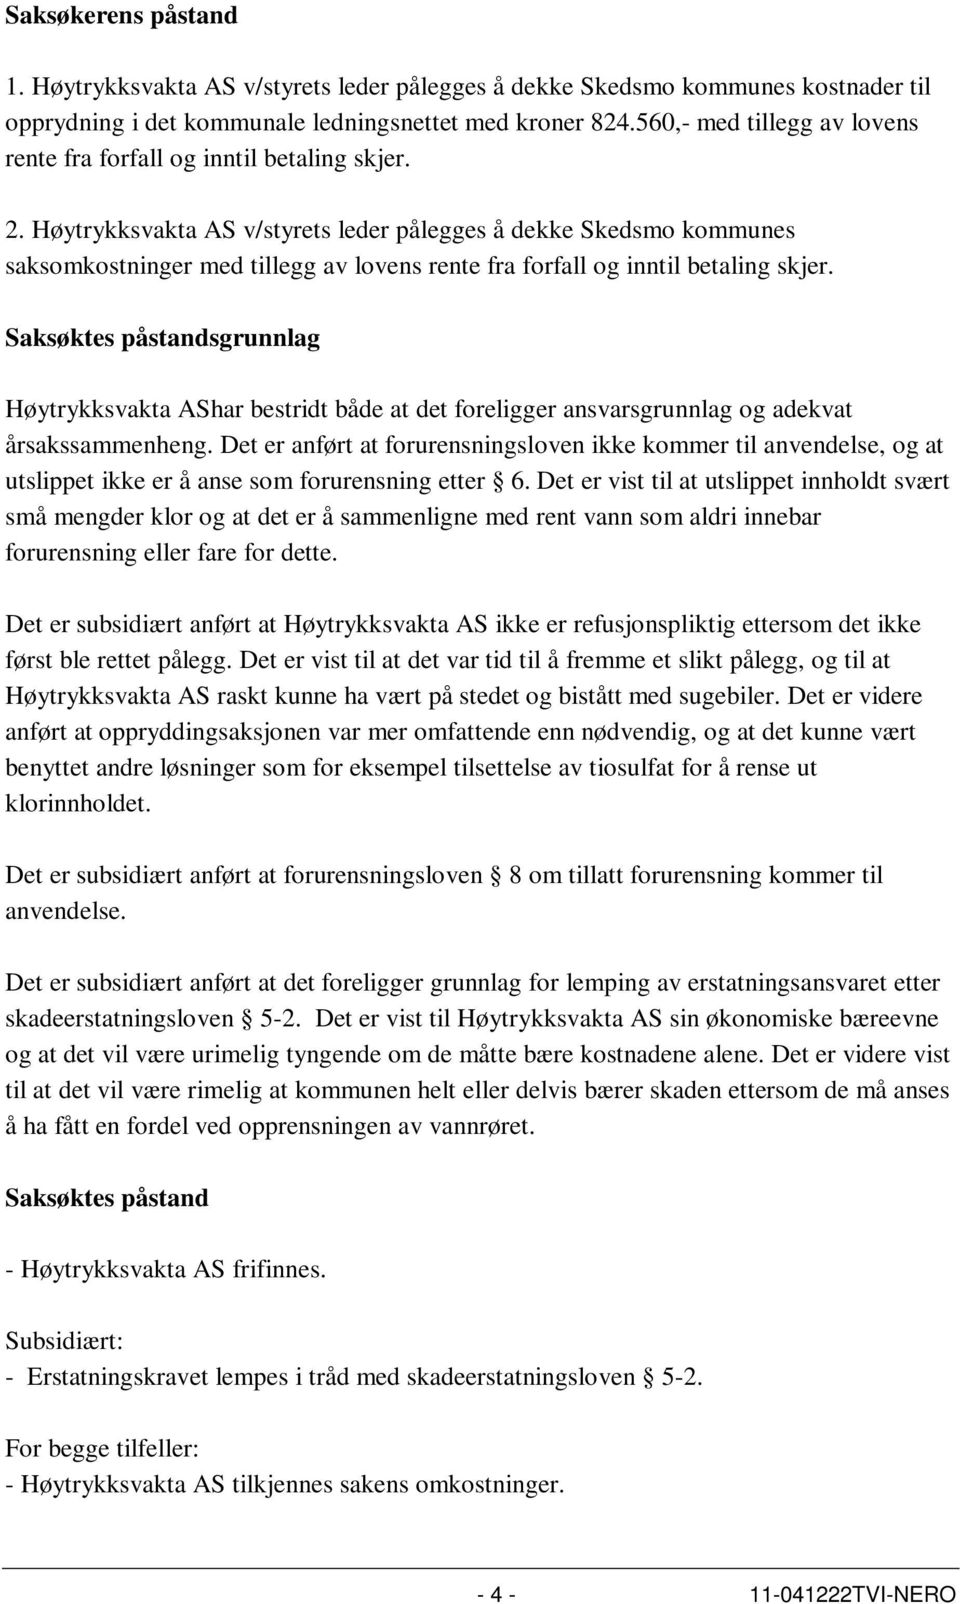 Høytrykksvakta AS v/styrets leder pålegges å dekke Skedsmo kommunes saksomkostninger med tillegg av lovens rente fra forfall og inntil betaling skjer.